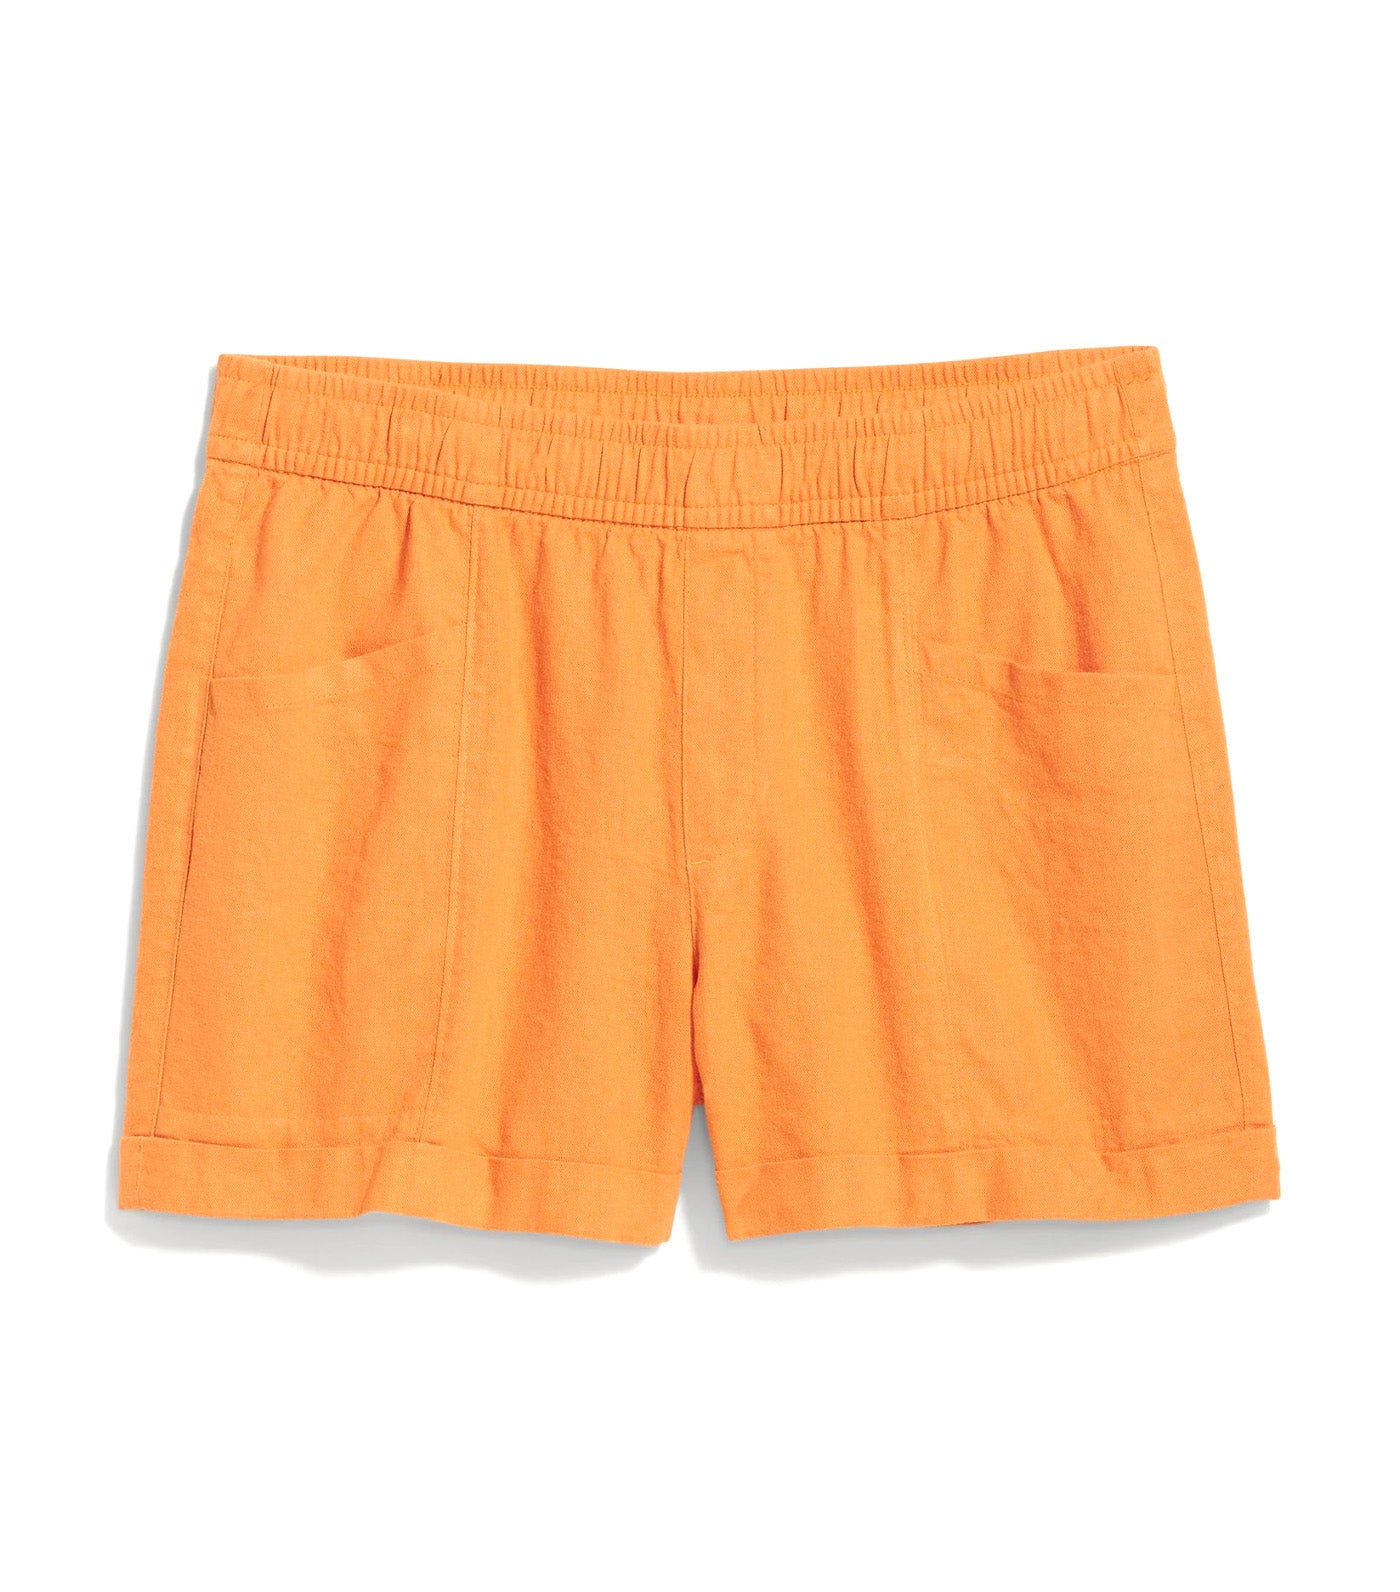 High-Waisted Linen-Blend Shorts for Women 3.5-Inch Inseam Wild Papaya